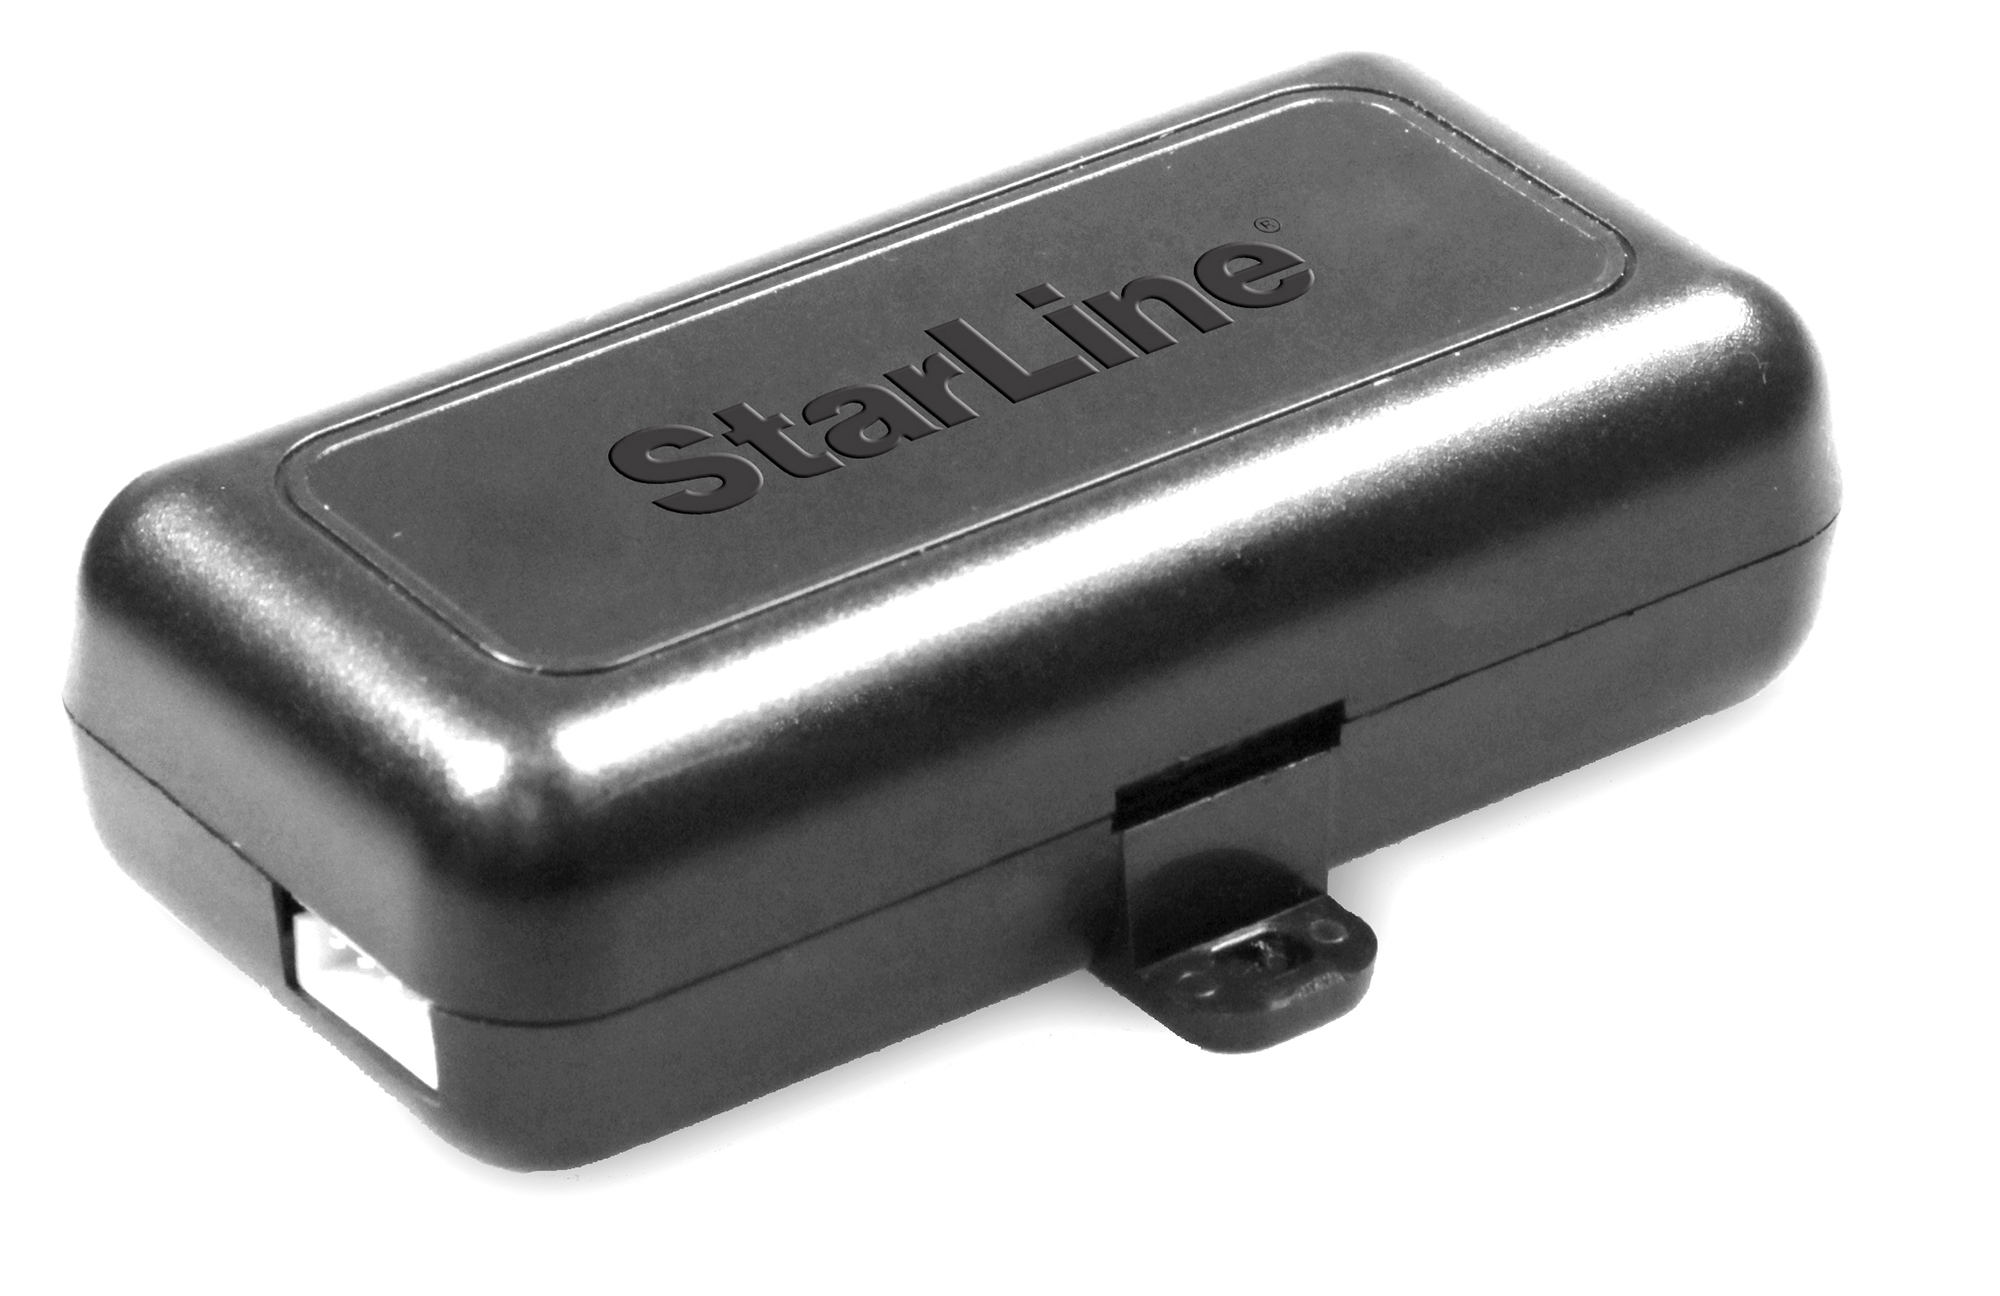 Модуль обхода штатного иммобилайзера StarLine BP-02 корпус ключа зажигания riooak new 5 шт лот новый транспондер для bmw 1999 2005 uncut hu58 blade без чипа